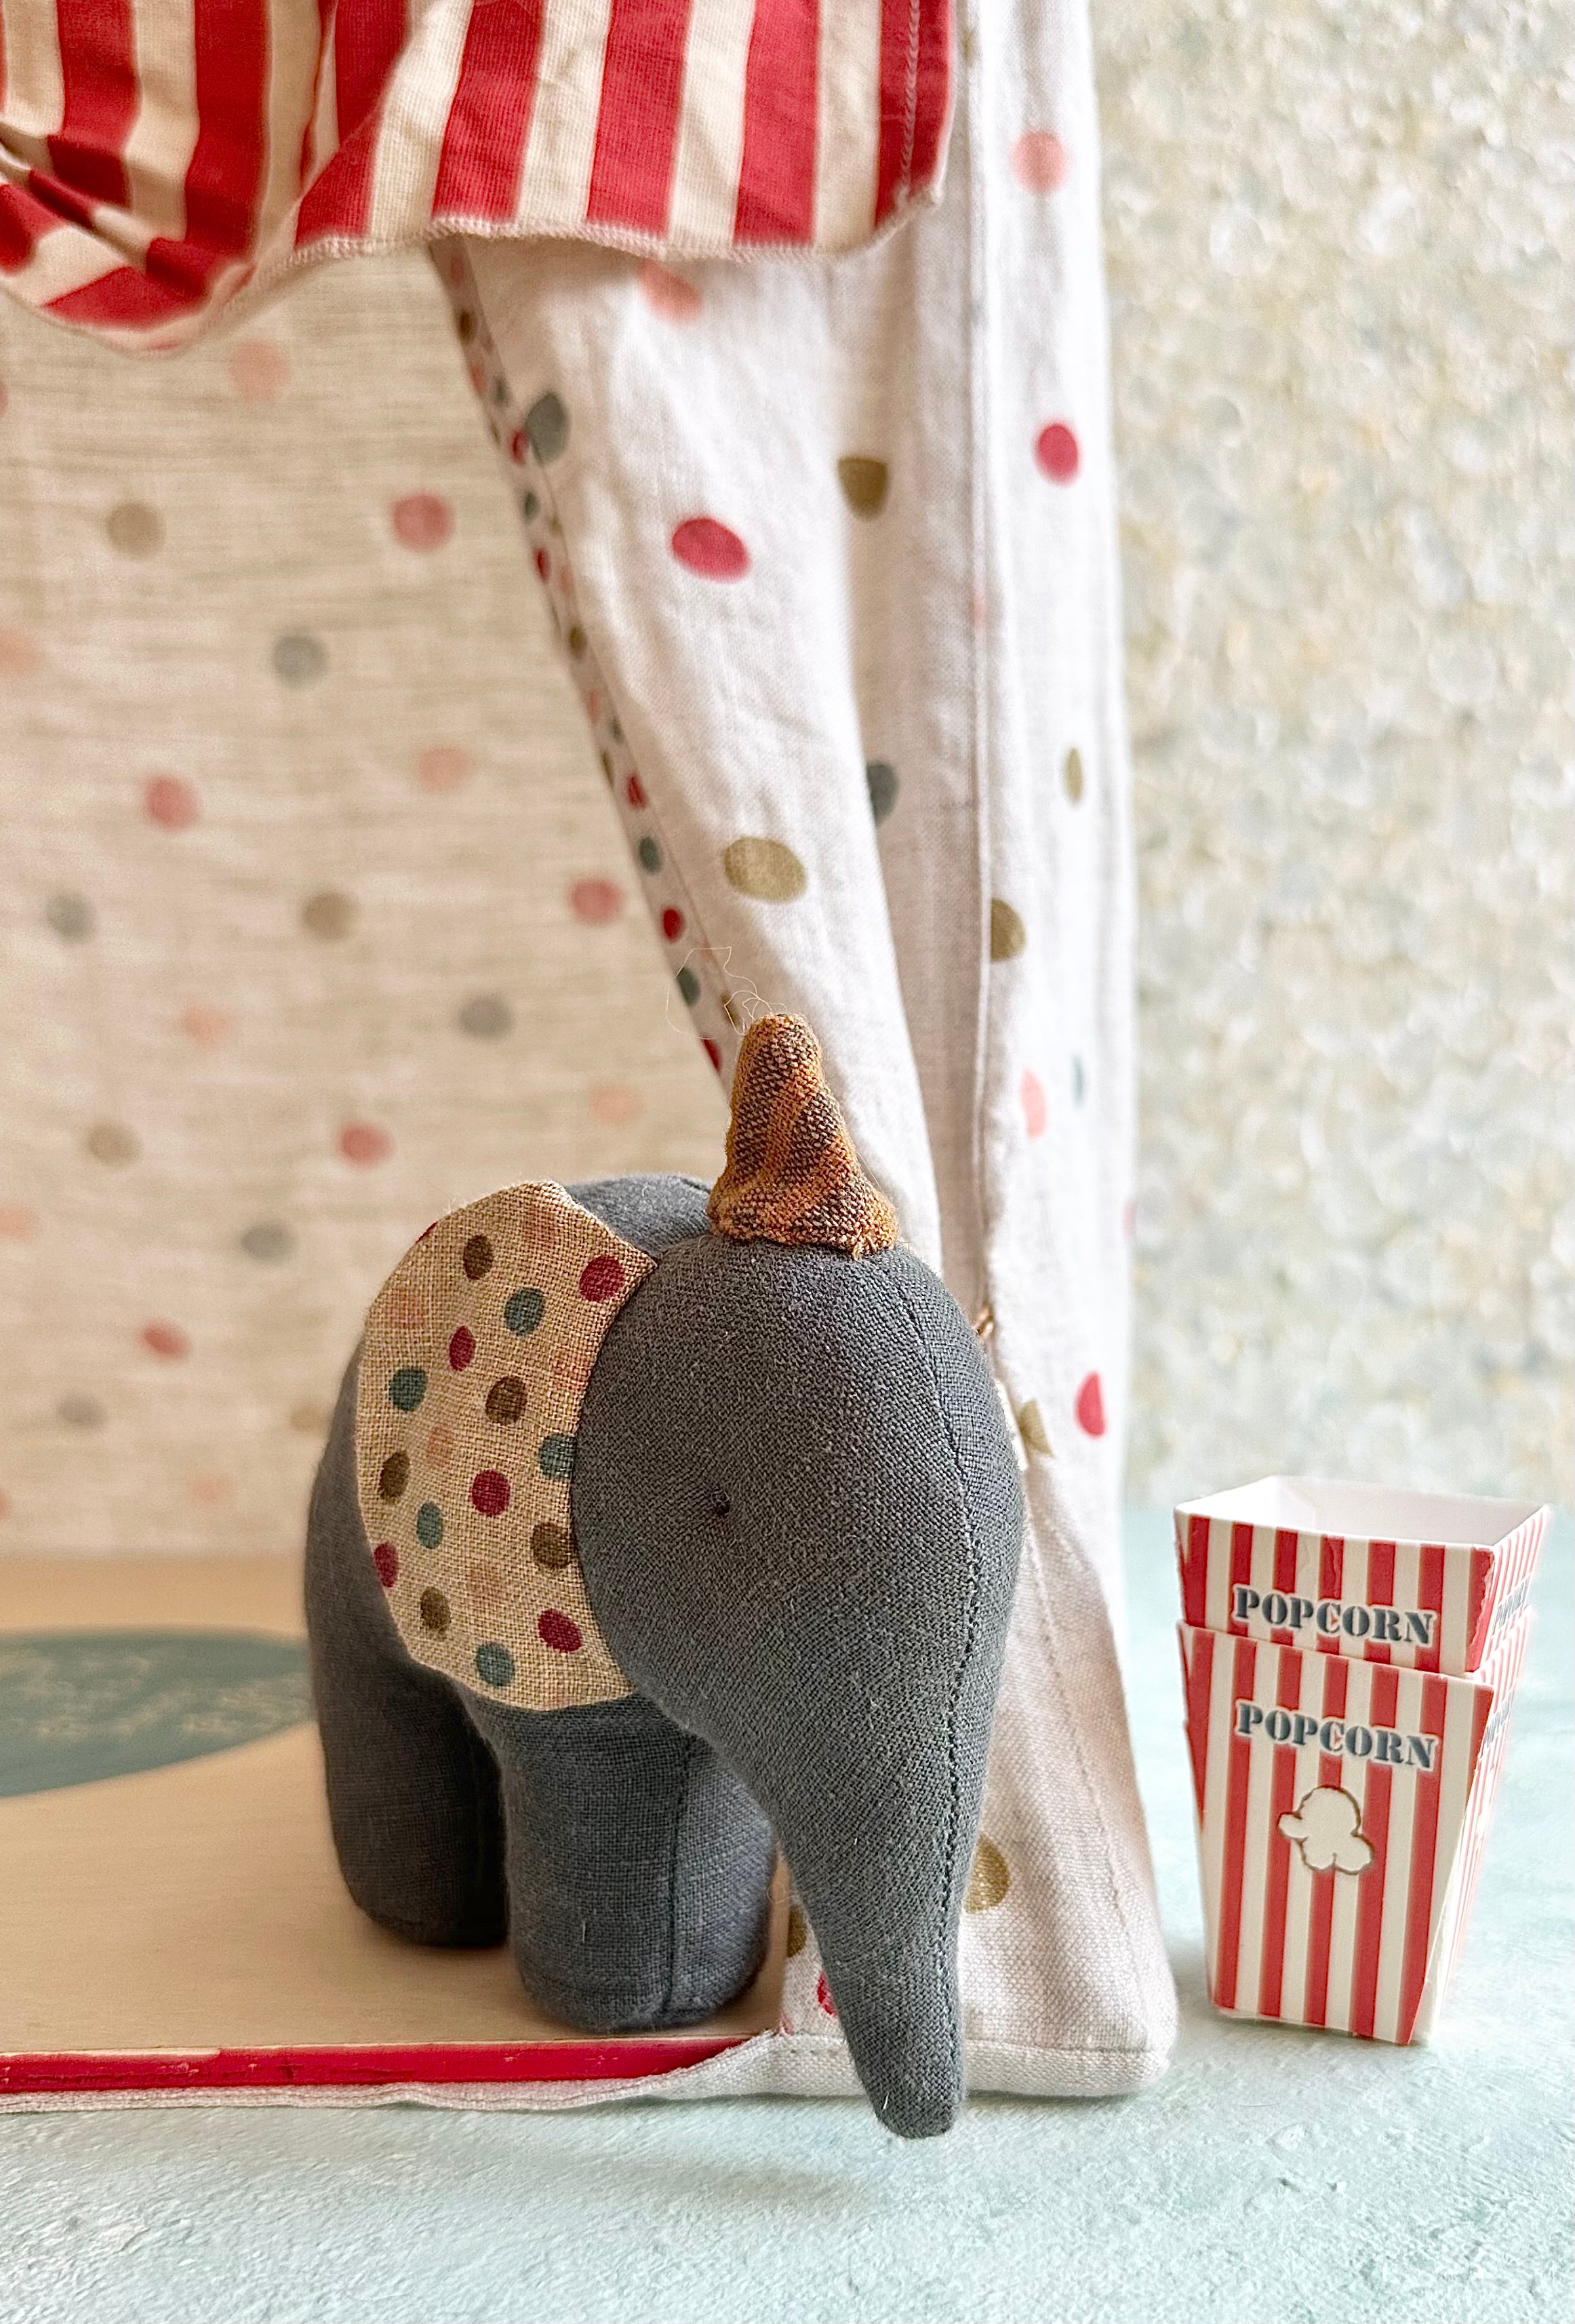 Circus Elephant - 2017